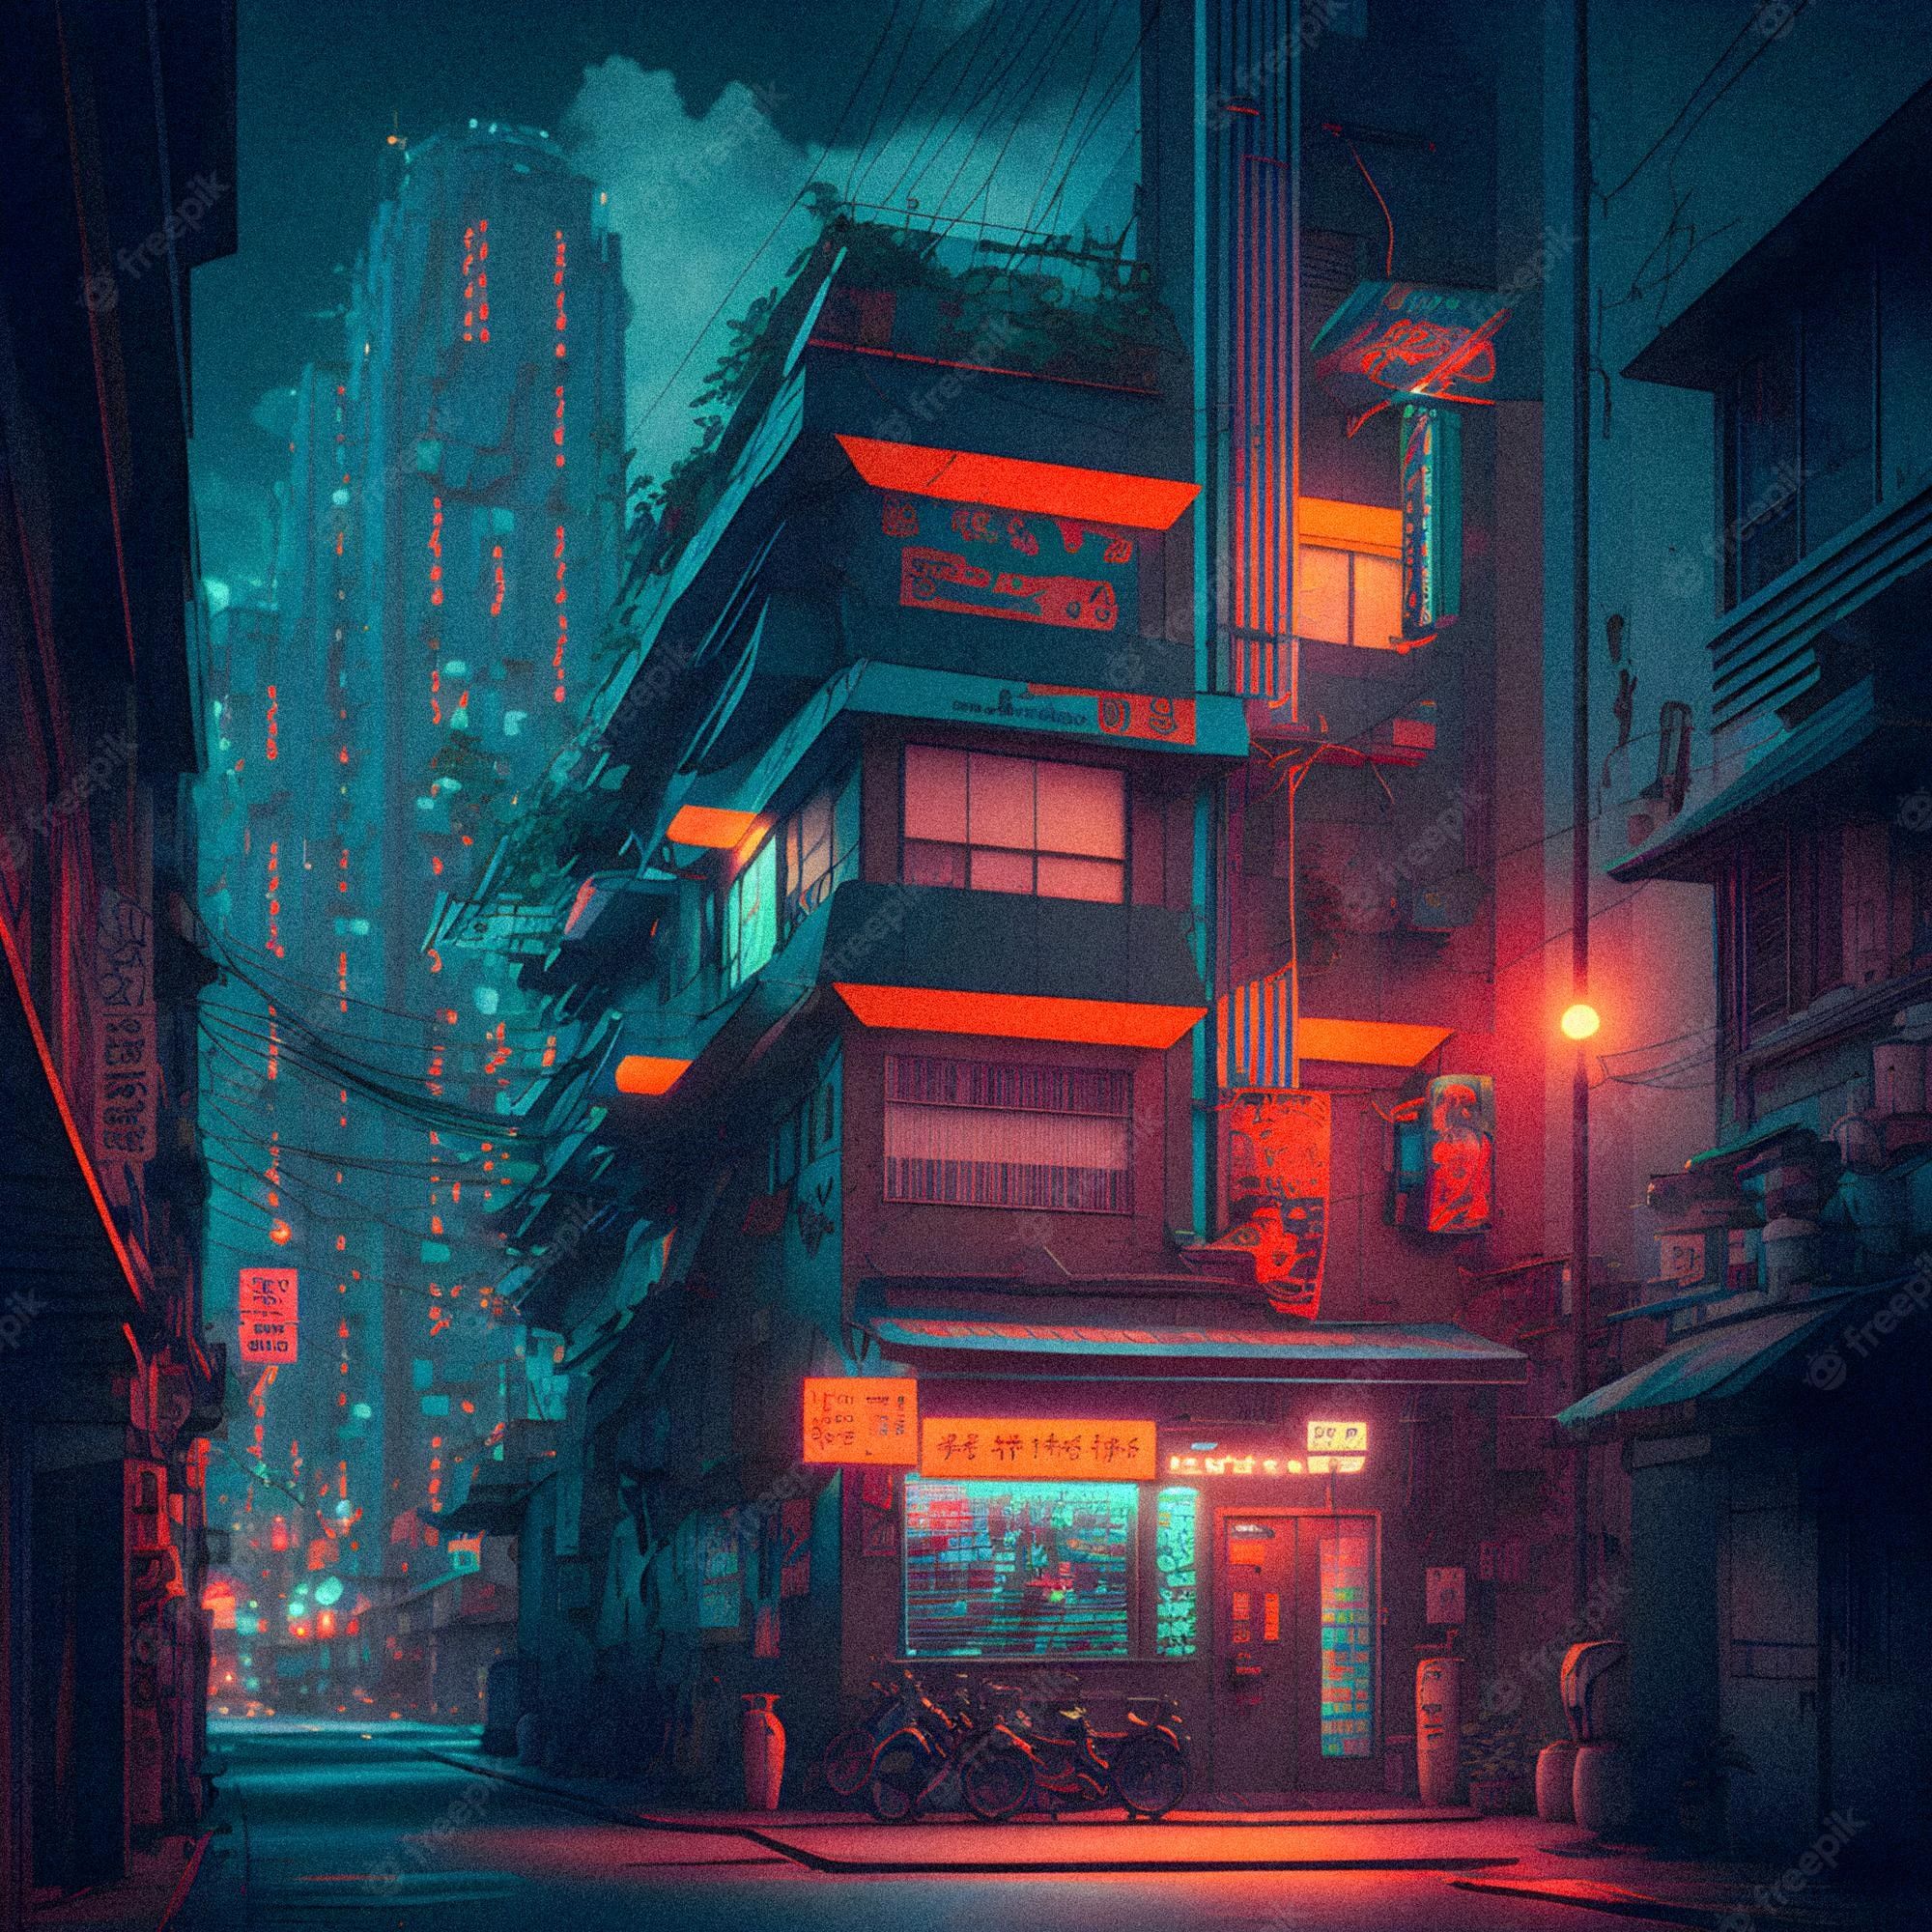 Tokyo Night Image